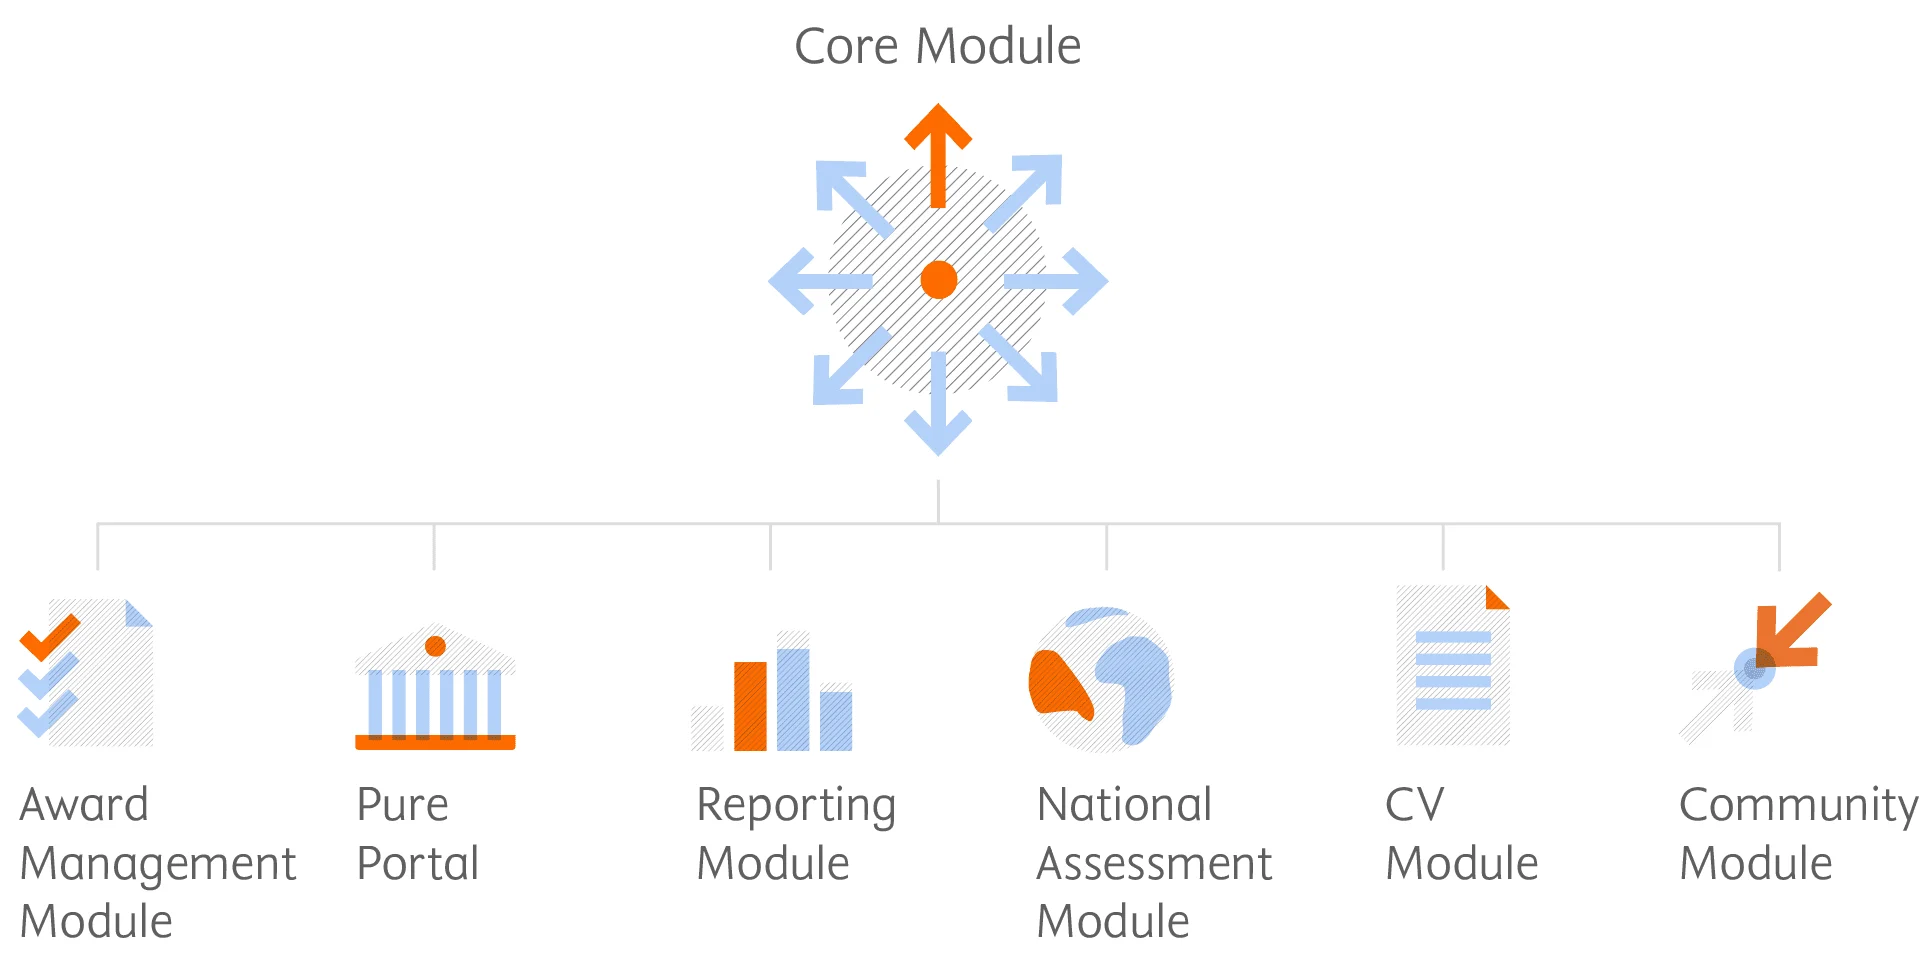 Pure 模組示意圖： 核心模組包括了獎助管理模組、Pure 入口網站、報告模組、國家評估模組、履歷模組和社群模組